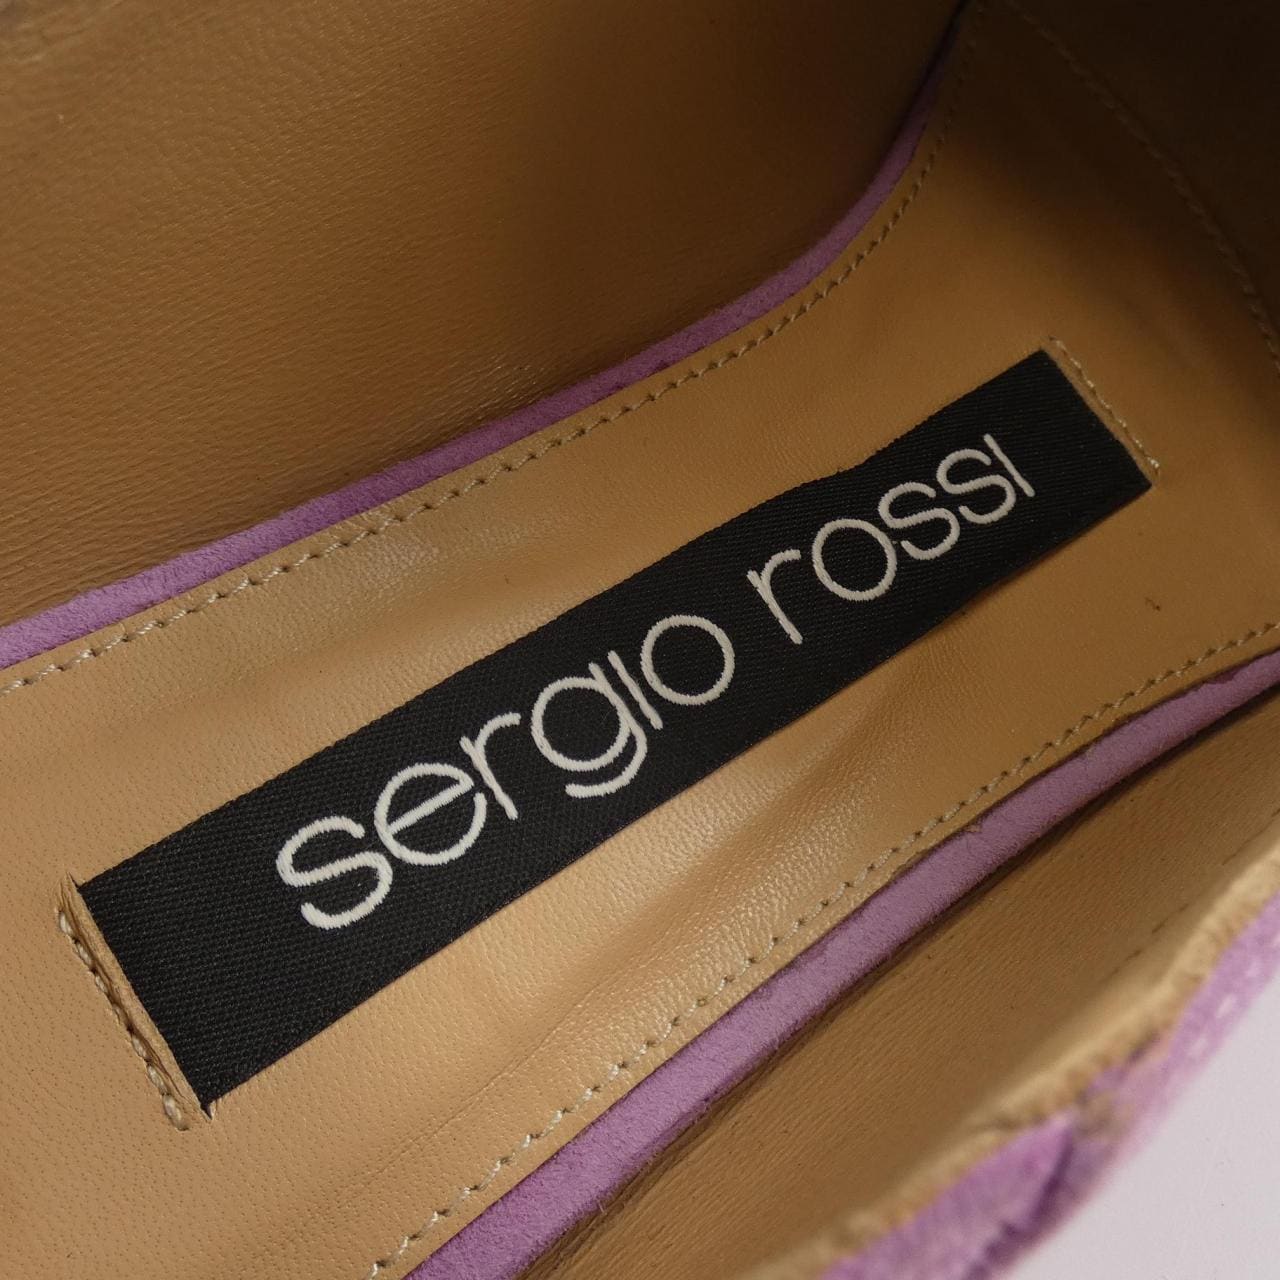 sergio rossi塞尔吉奥·罗西 鞋